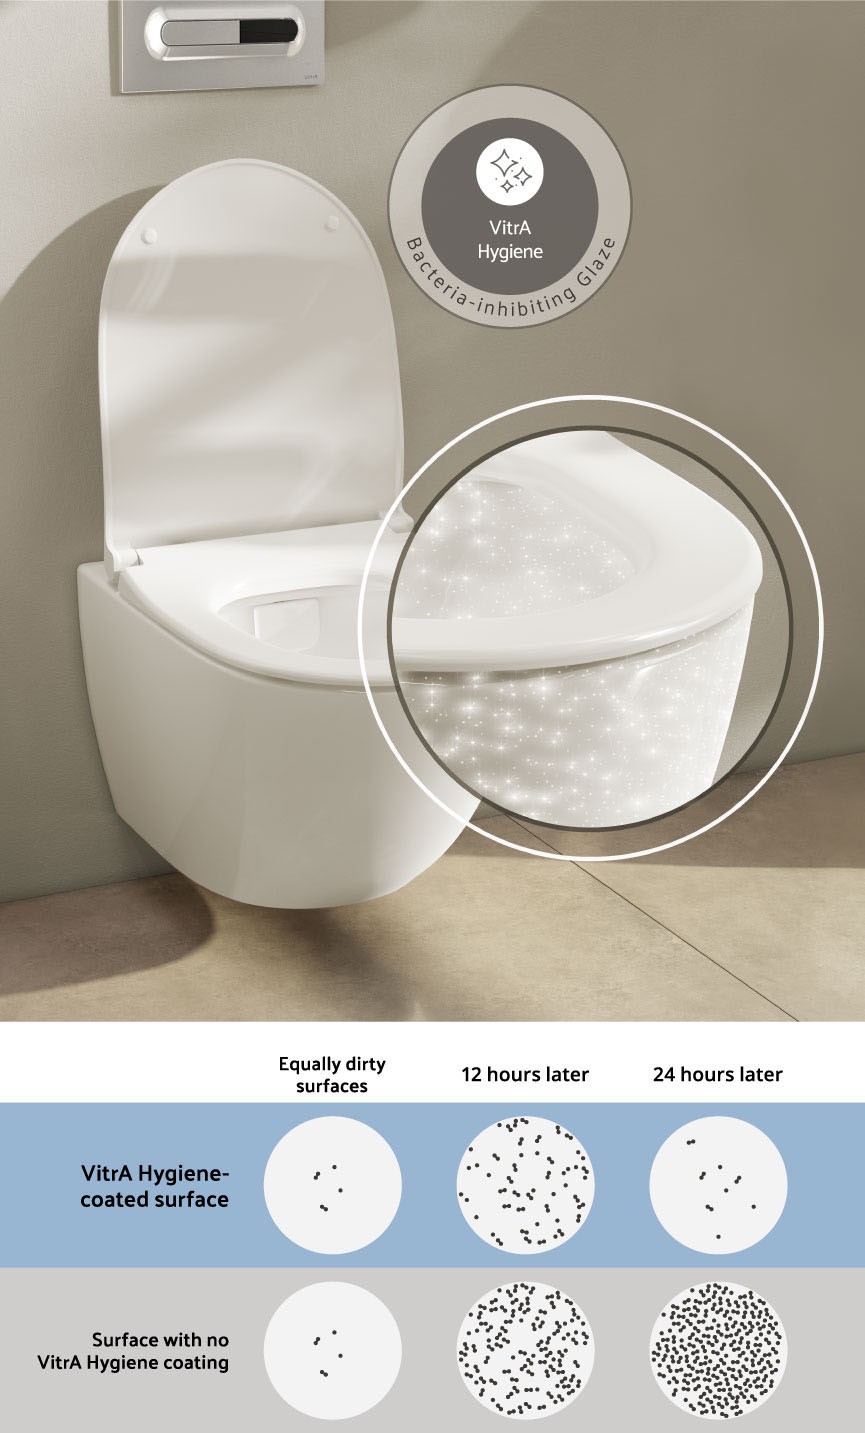 Abattant wc MADE pour S50 VITRA modèle. NOIR MAT. SOFT CLOSE. PLUS Quality  ✓  online!